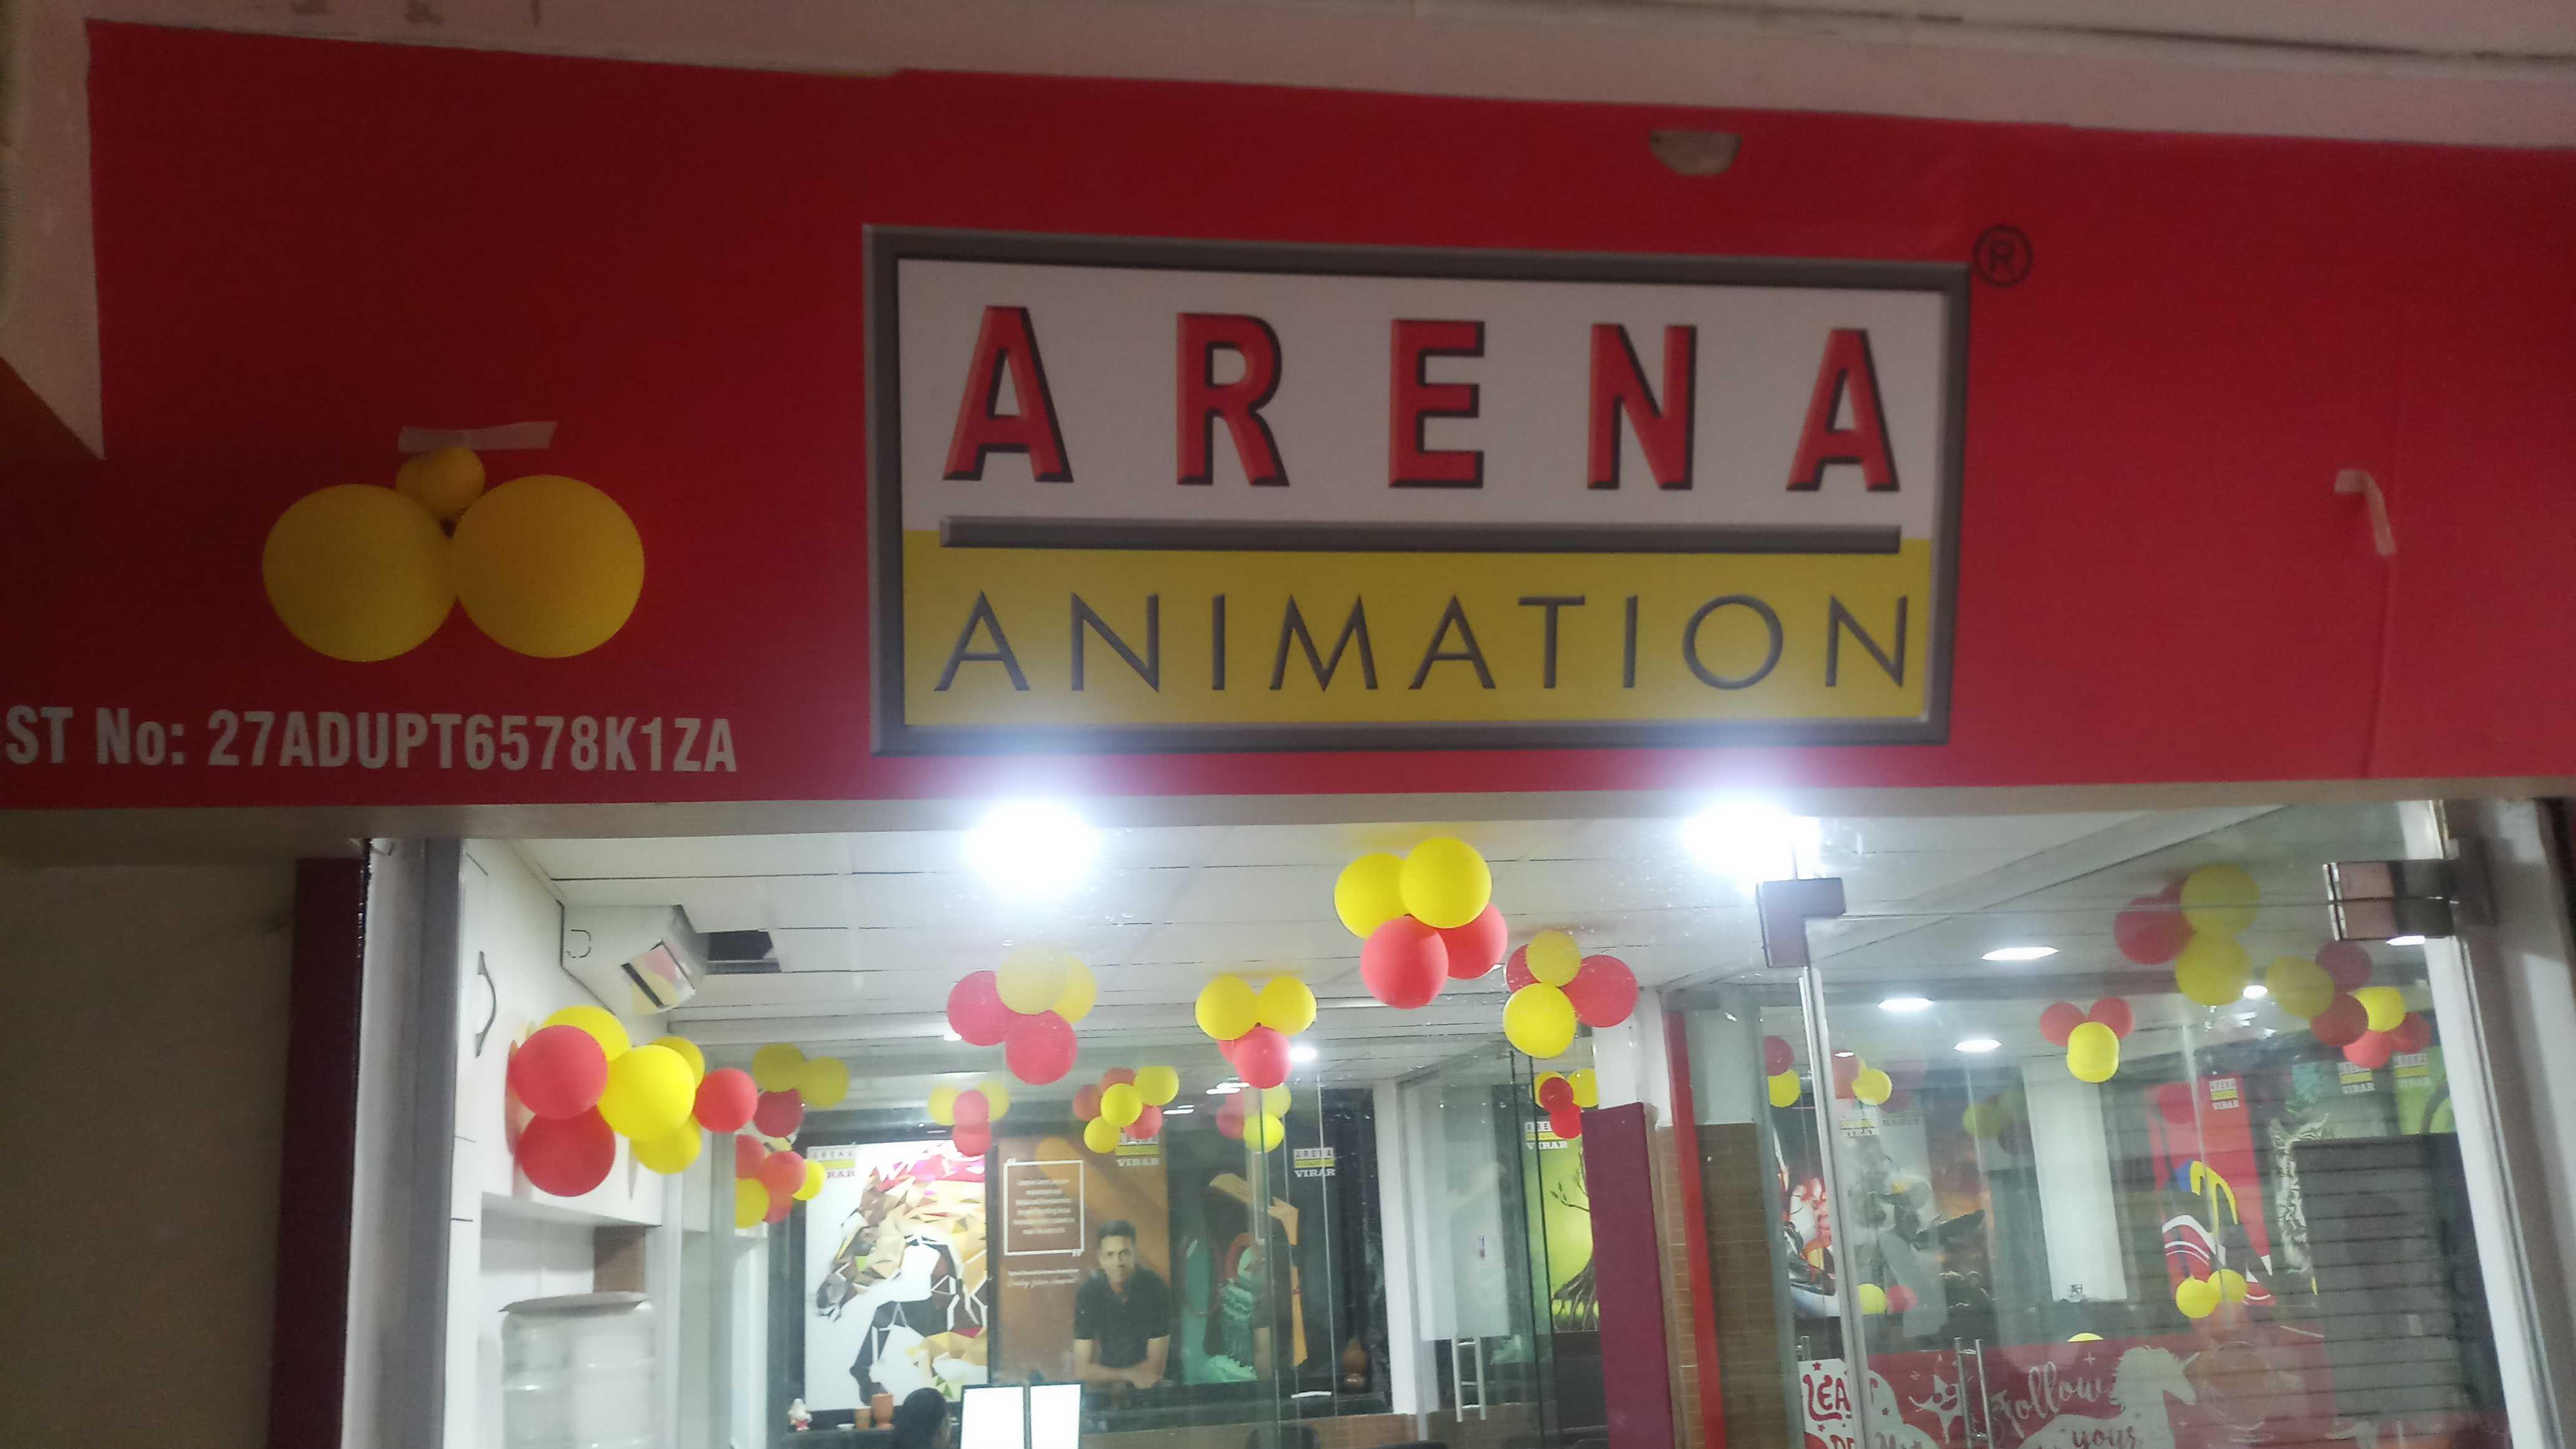 Arena Animation in Virar West, Mumbai-401303 | Sulekha Mumbai